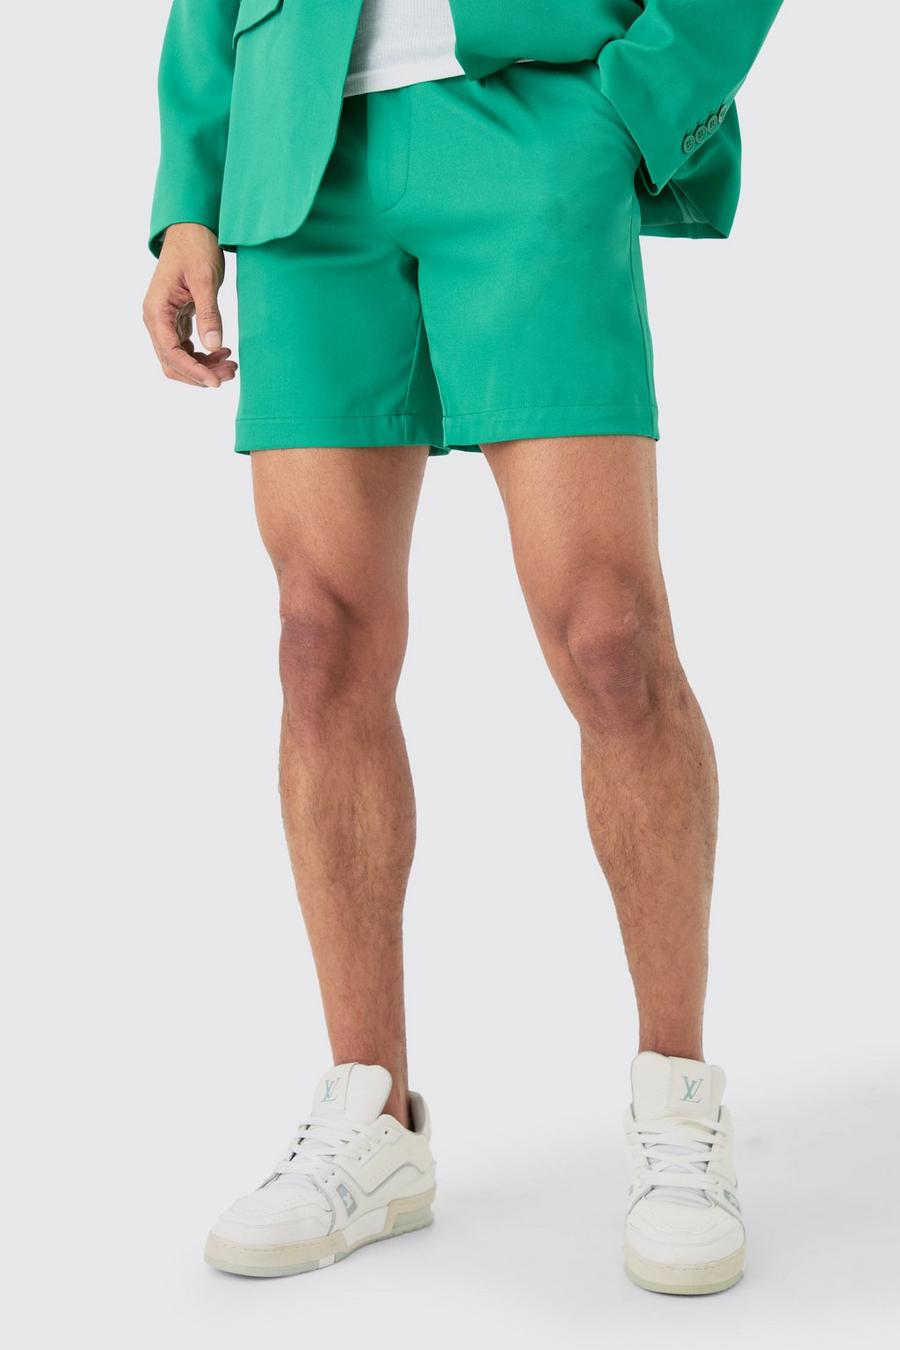 Pantalón corto entallado - pieza intercambiable, Green